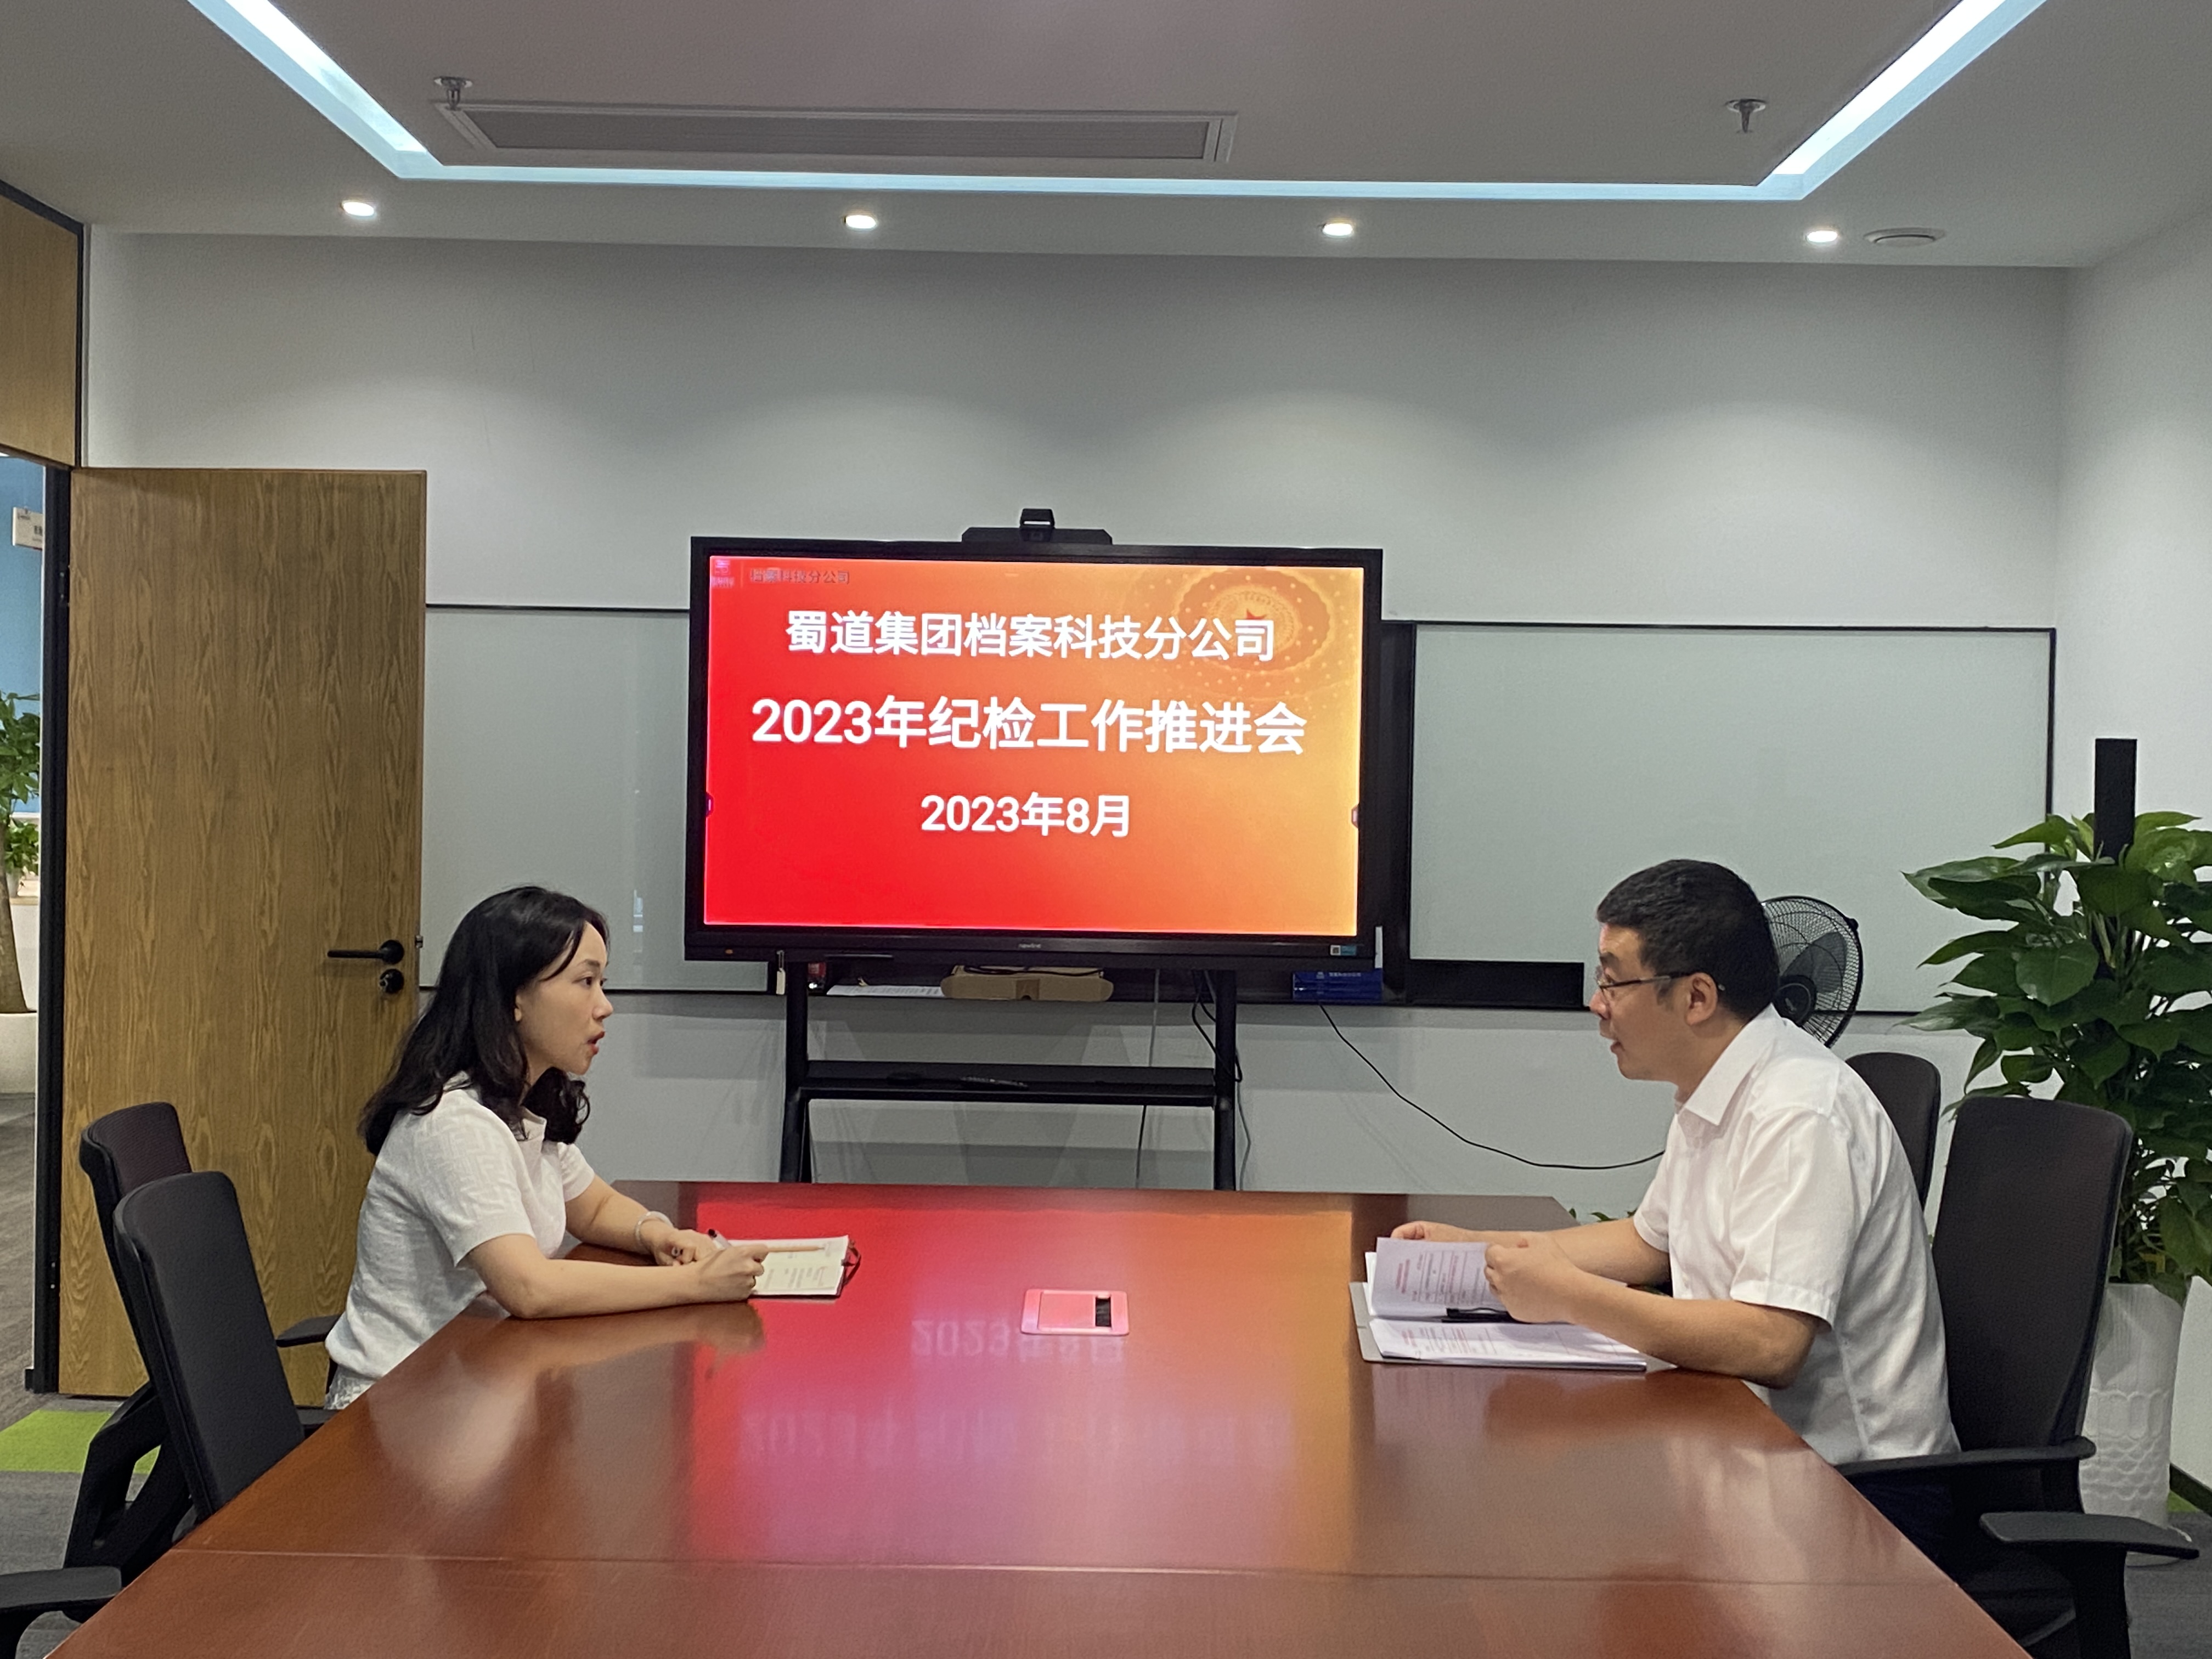 蜀道集团档案科技分公司 召开2023年纪检工作推进会